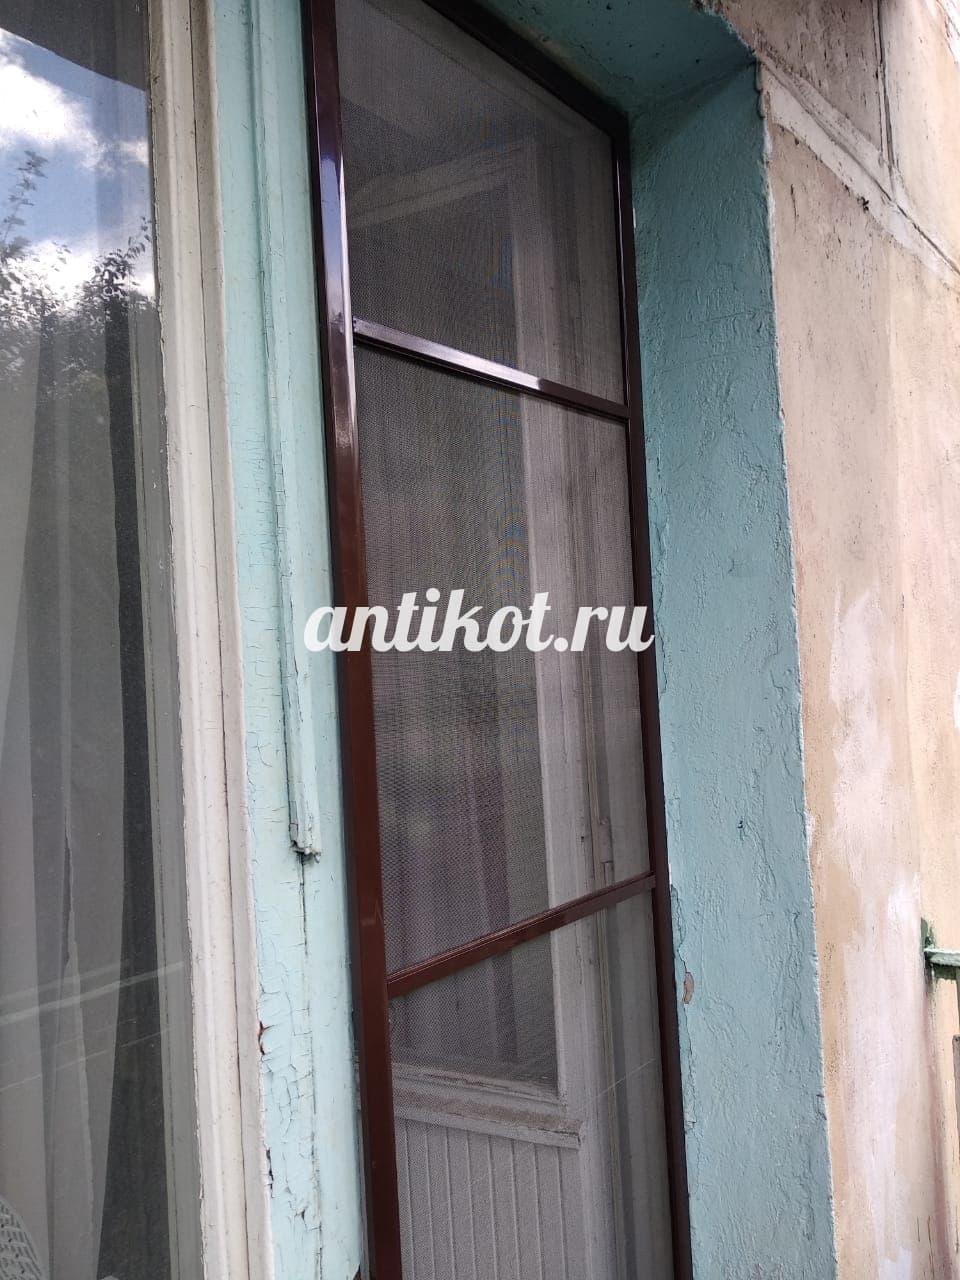 Коричневая дверь Antikot.ru - москитная